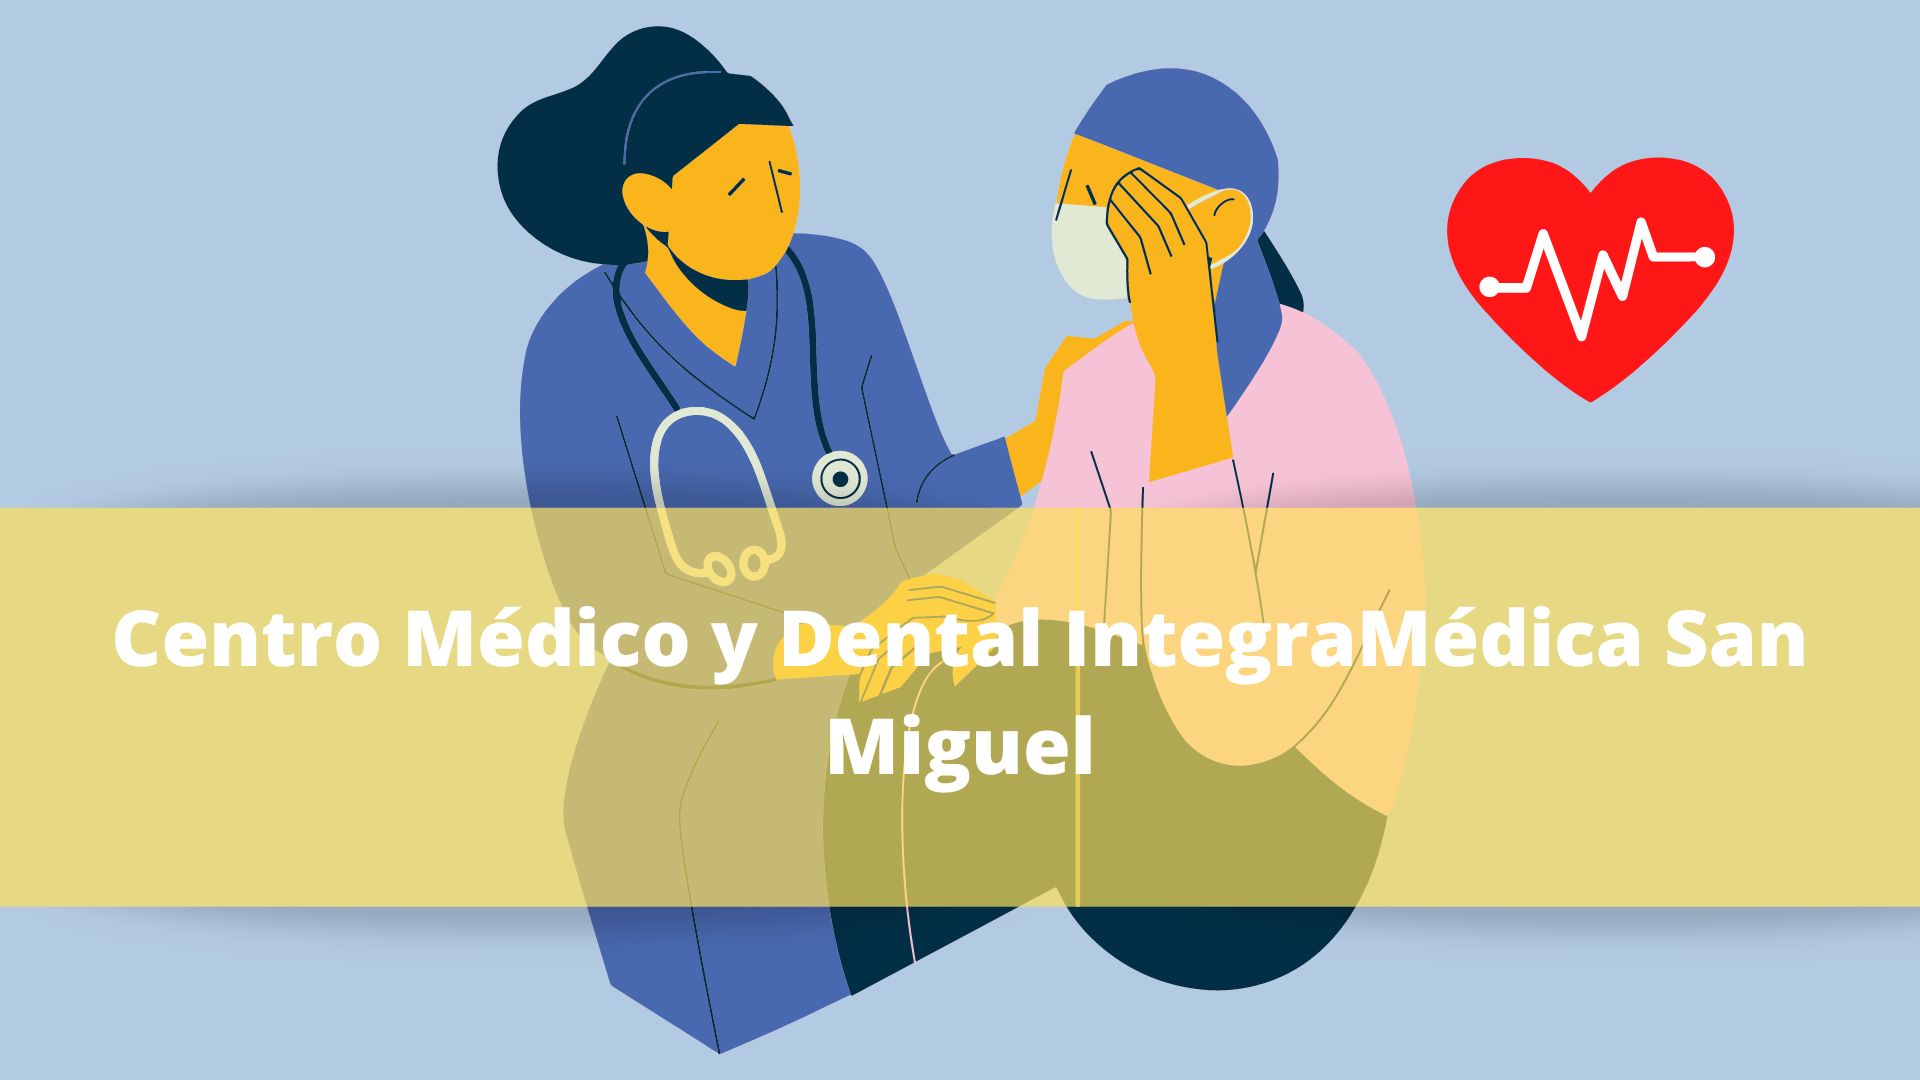 Centro Médico y Dental IntegraMédica San Miguel